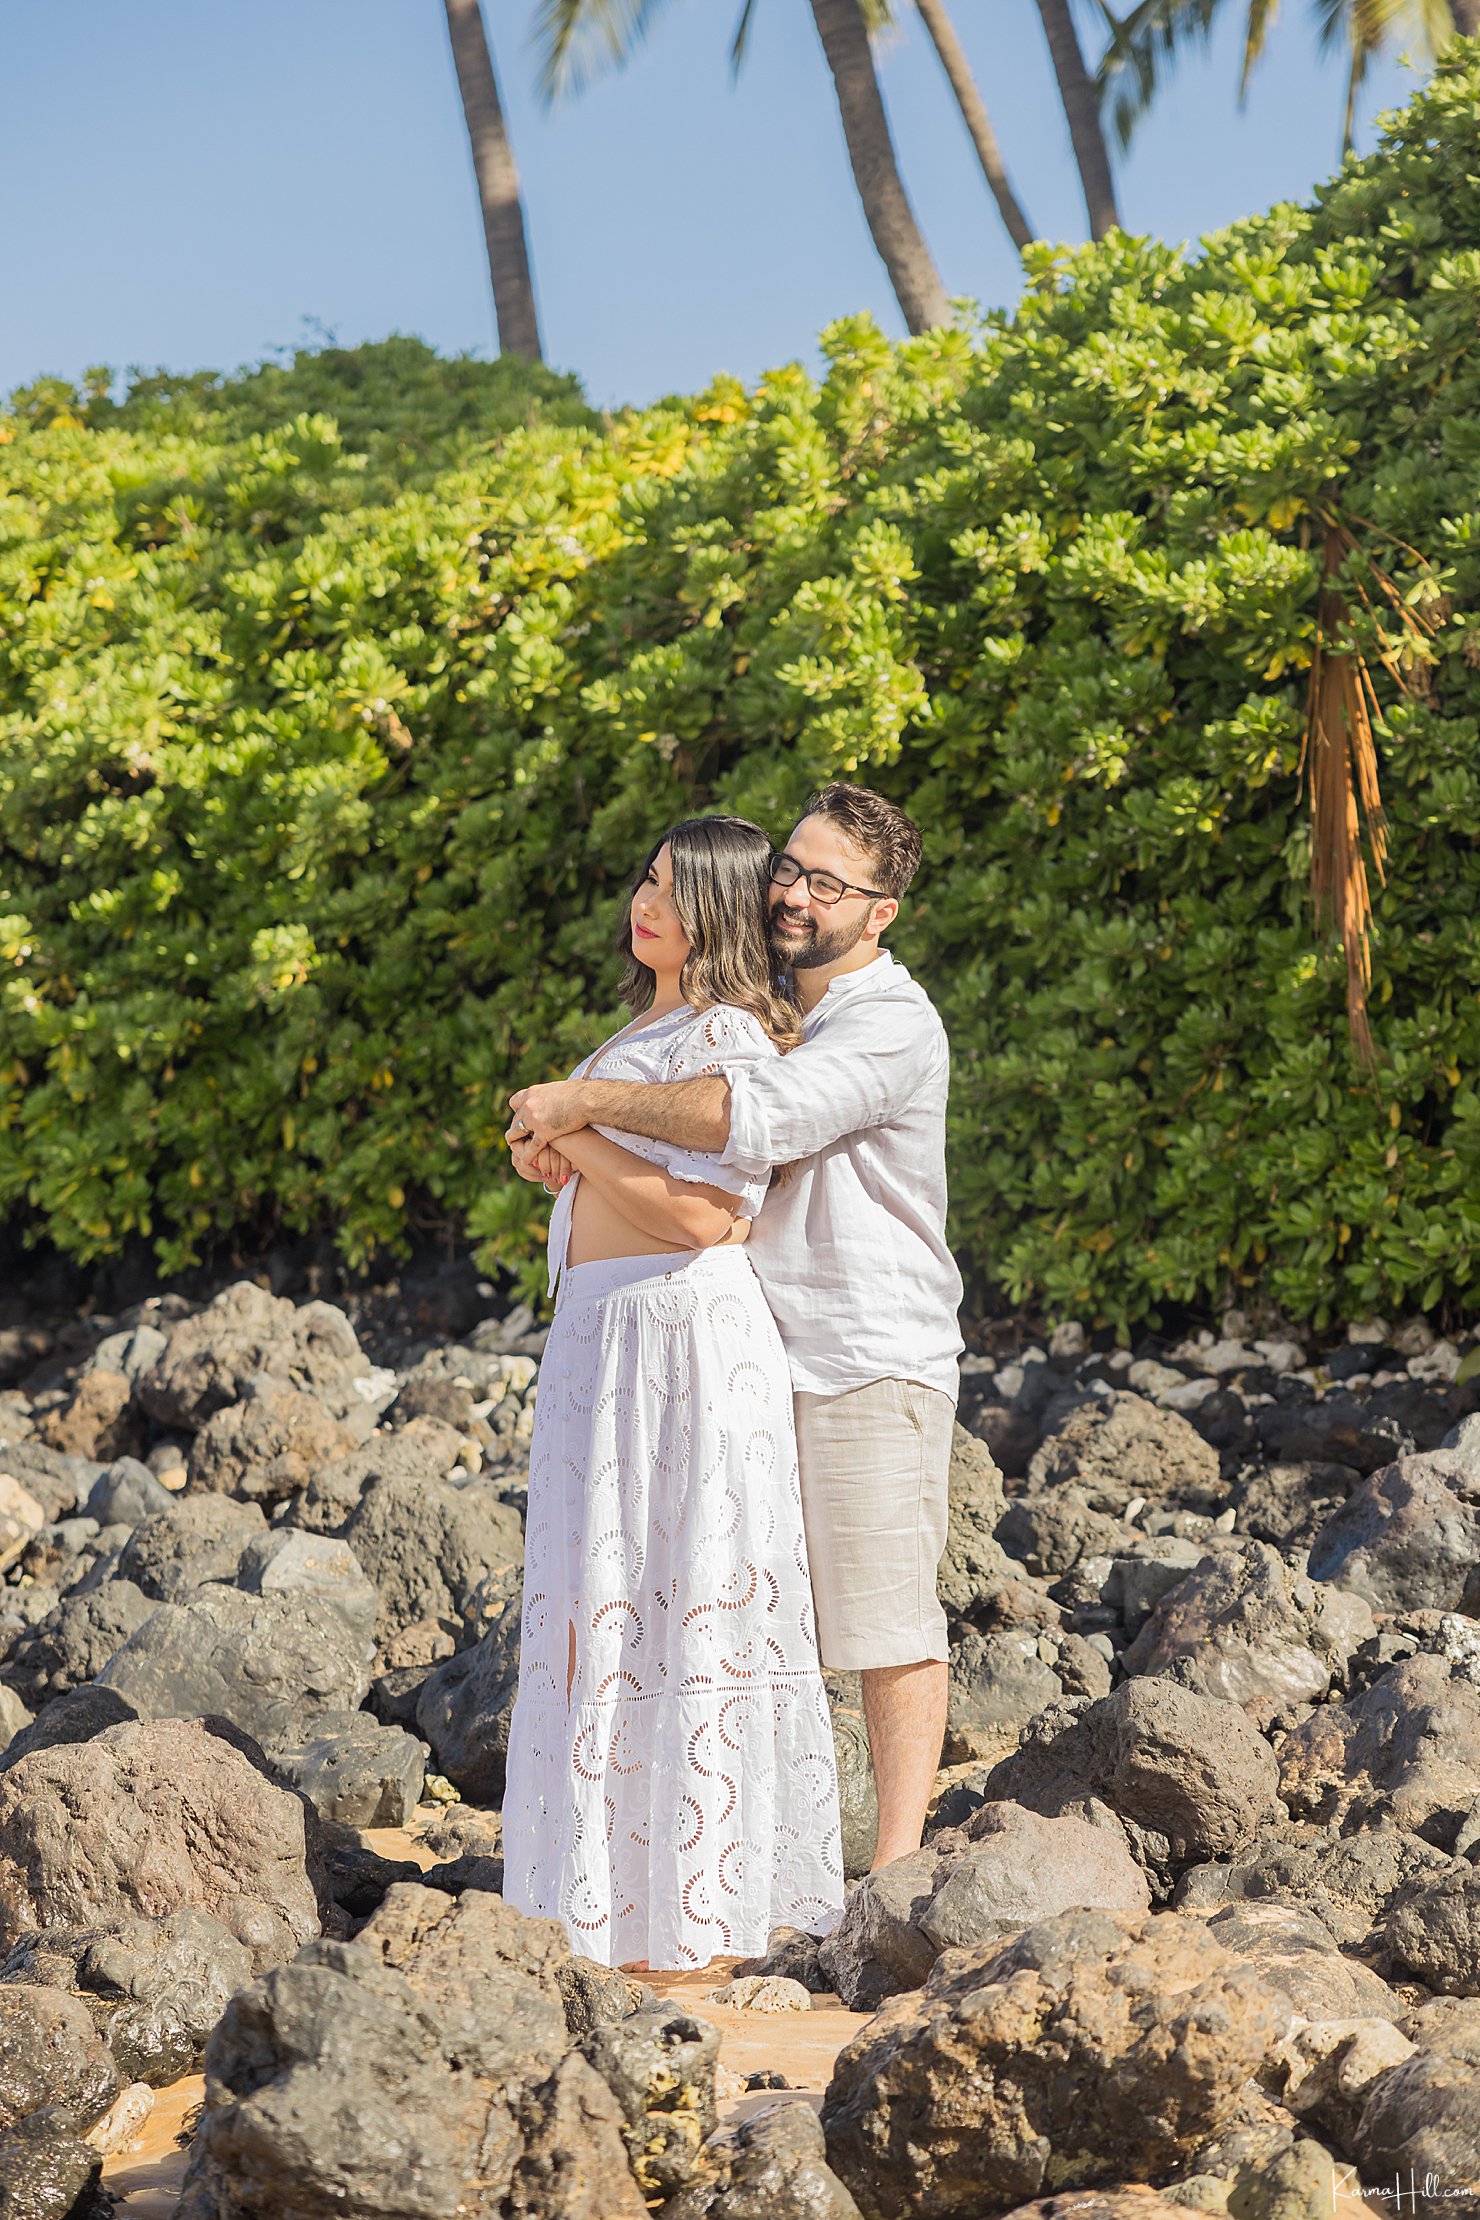 Honeymoon portraits in Maui, Hawaii